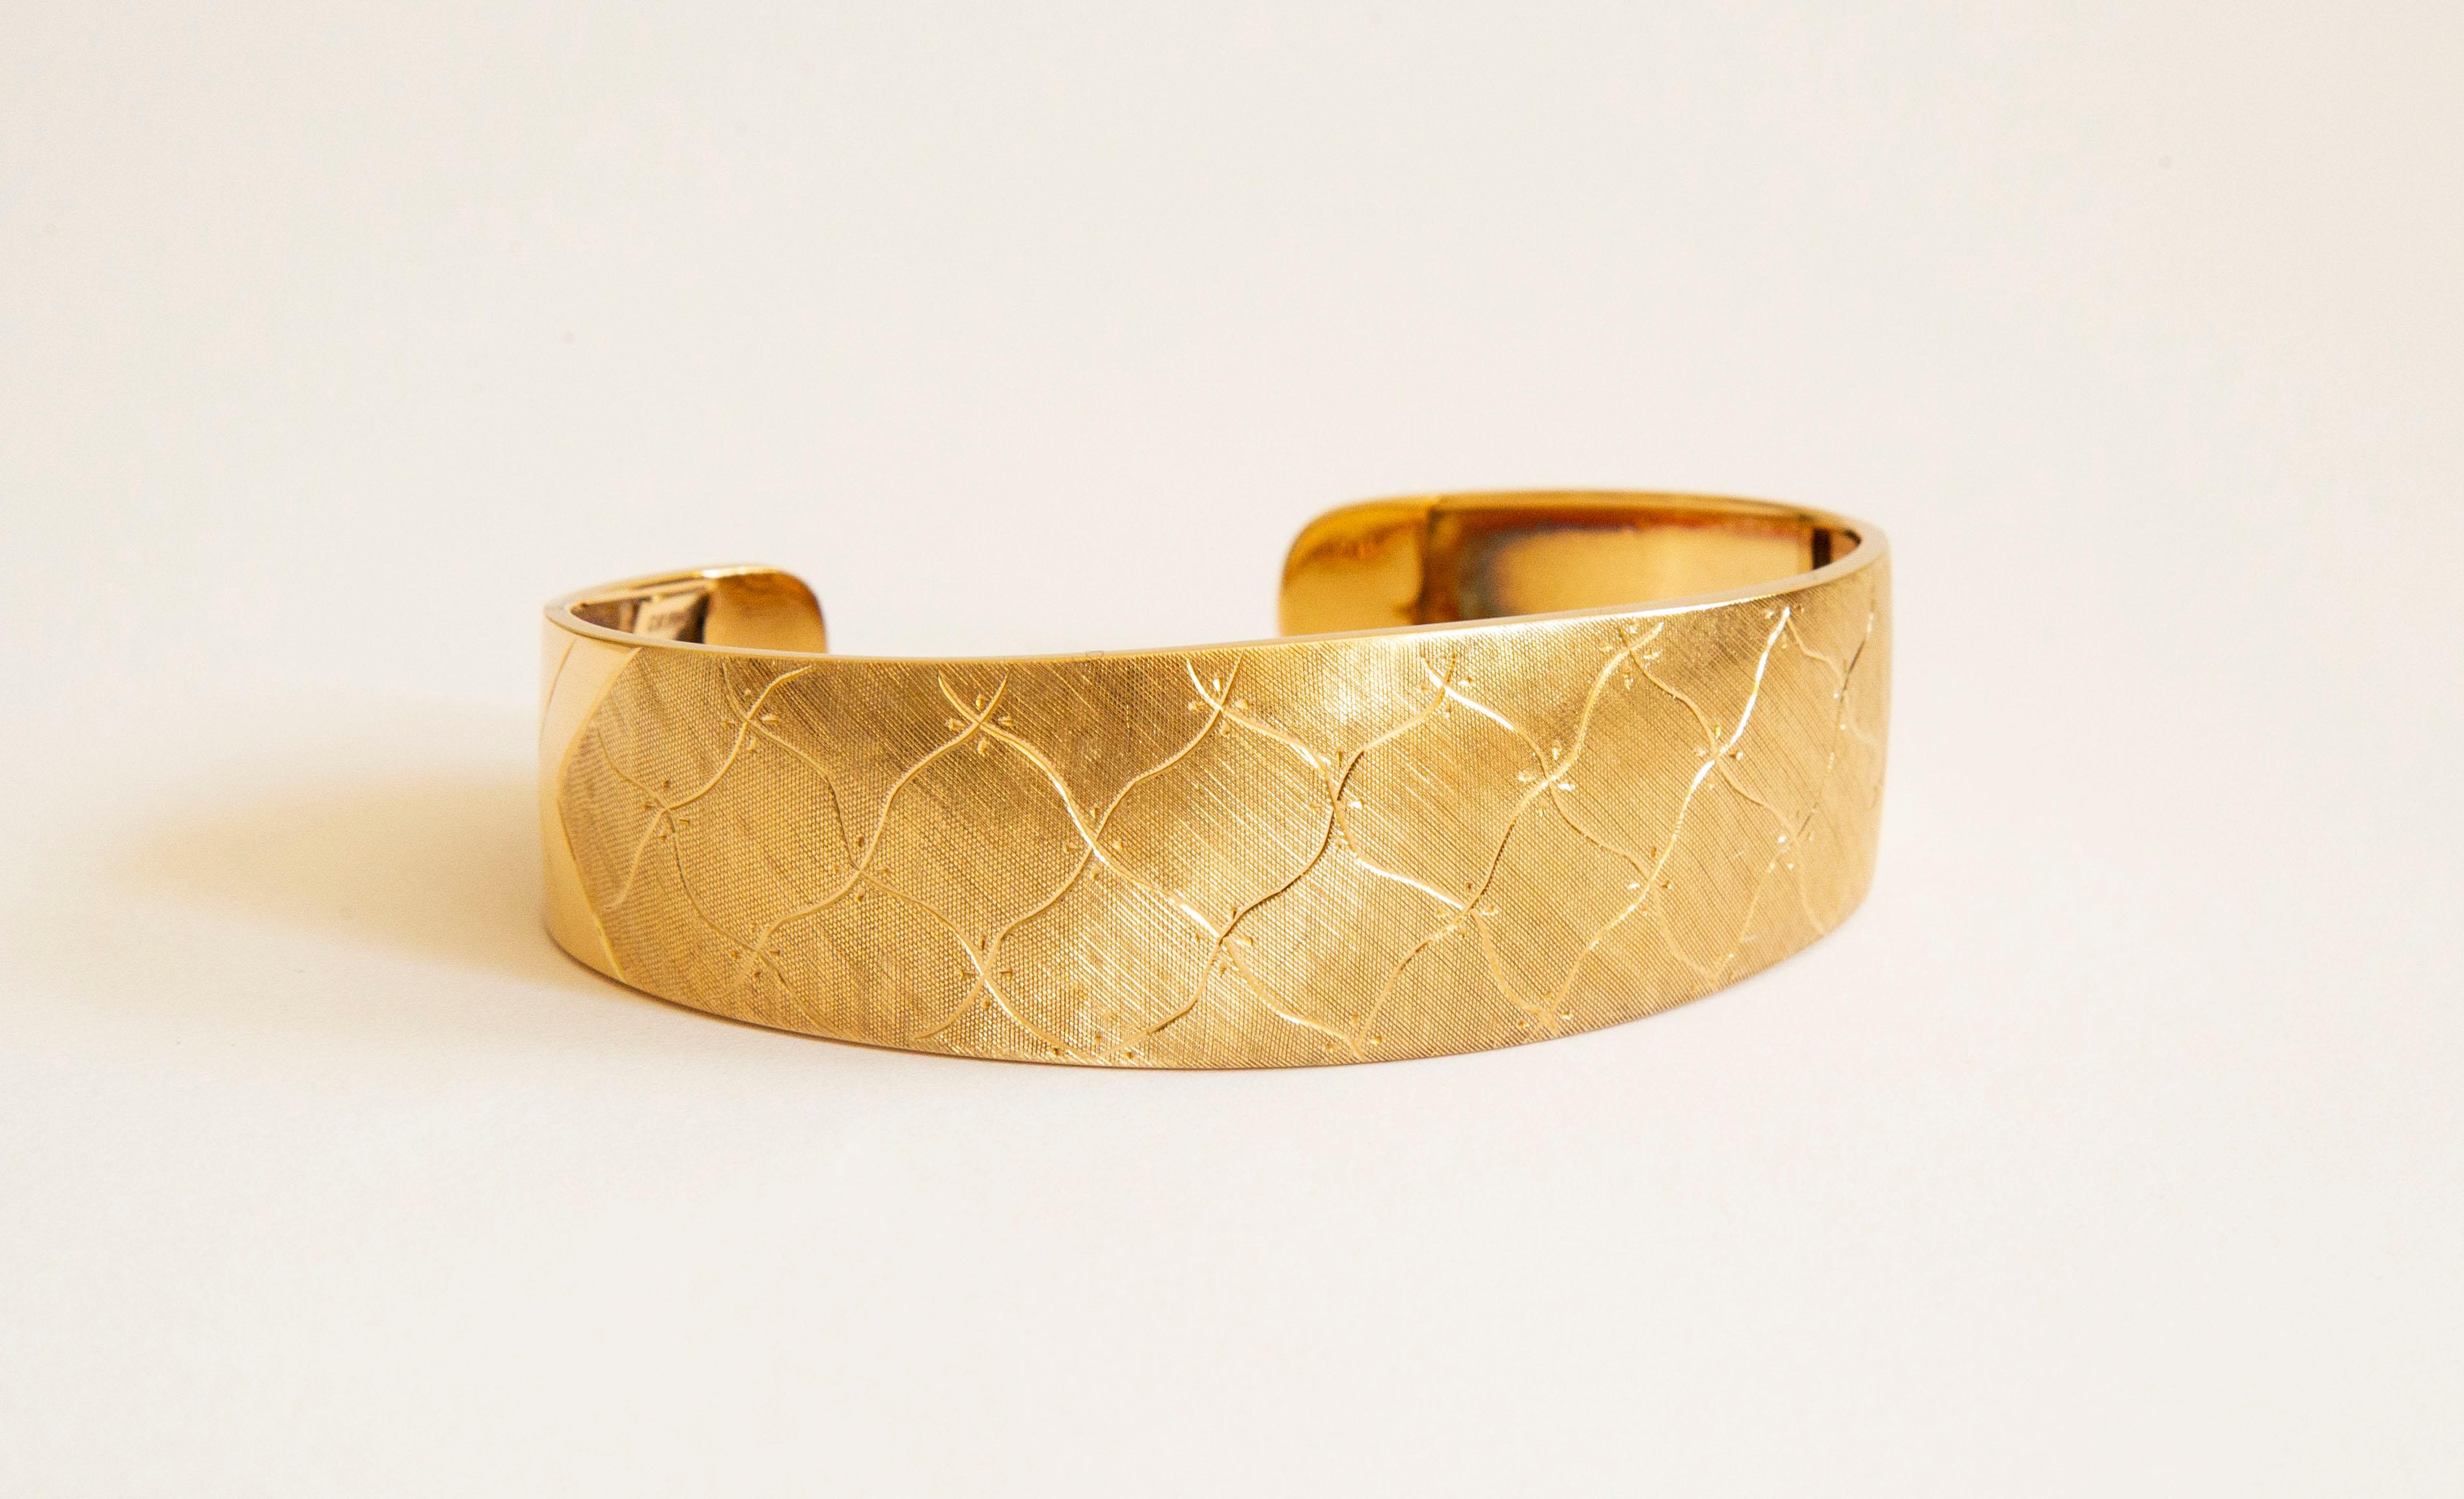 Ein Manschettenarmband aus 18 Karat Gelbgold. Das Armband ist mit einem abstrakten und unregelmäßigen Diamantenmuster graviert und hat eine satinierte/matte Oberfläche. Das Muster und das Finish bedecken die Oberseite und teilweise die Seitenteile